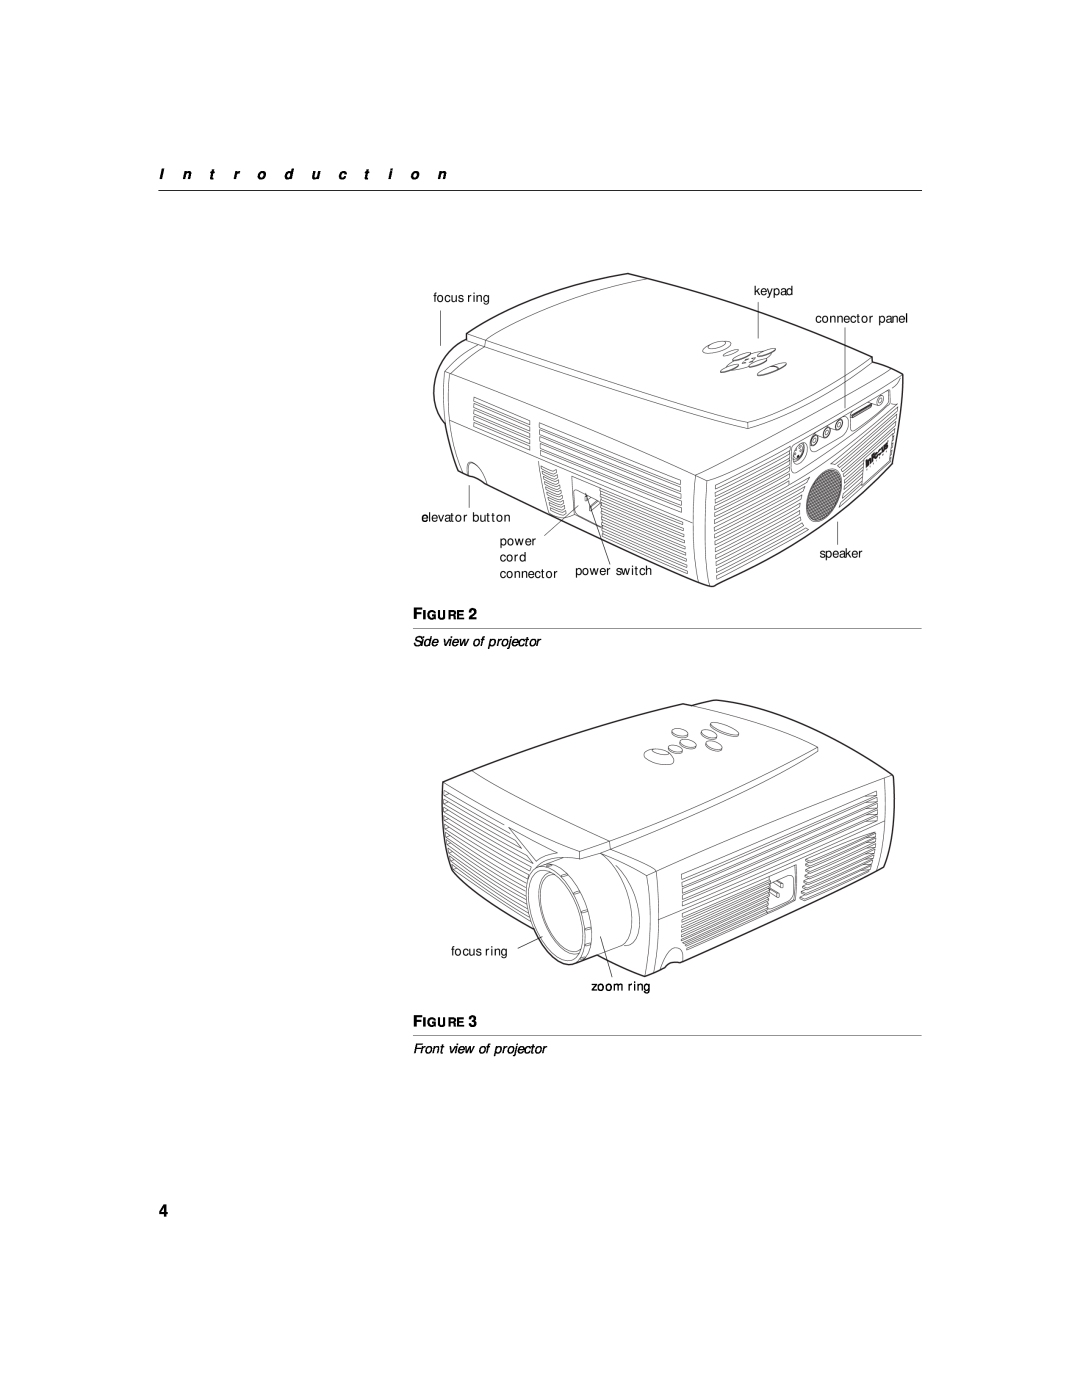 InFocus LP435z I n t r o d u c t i o n, Side view of projector, Front view of projector, focus ring, power, cord, speaker 